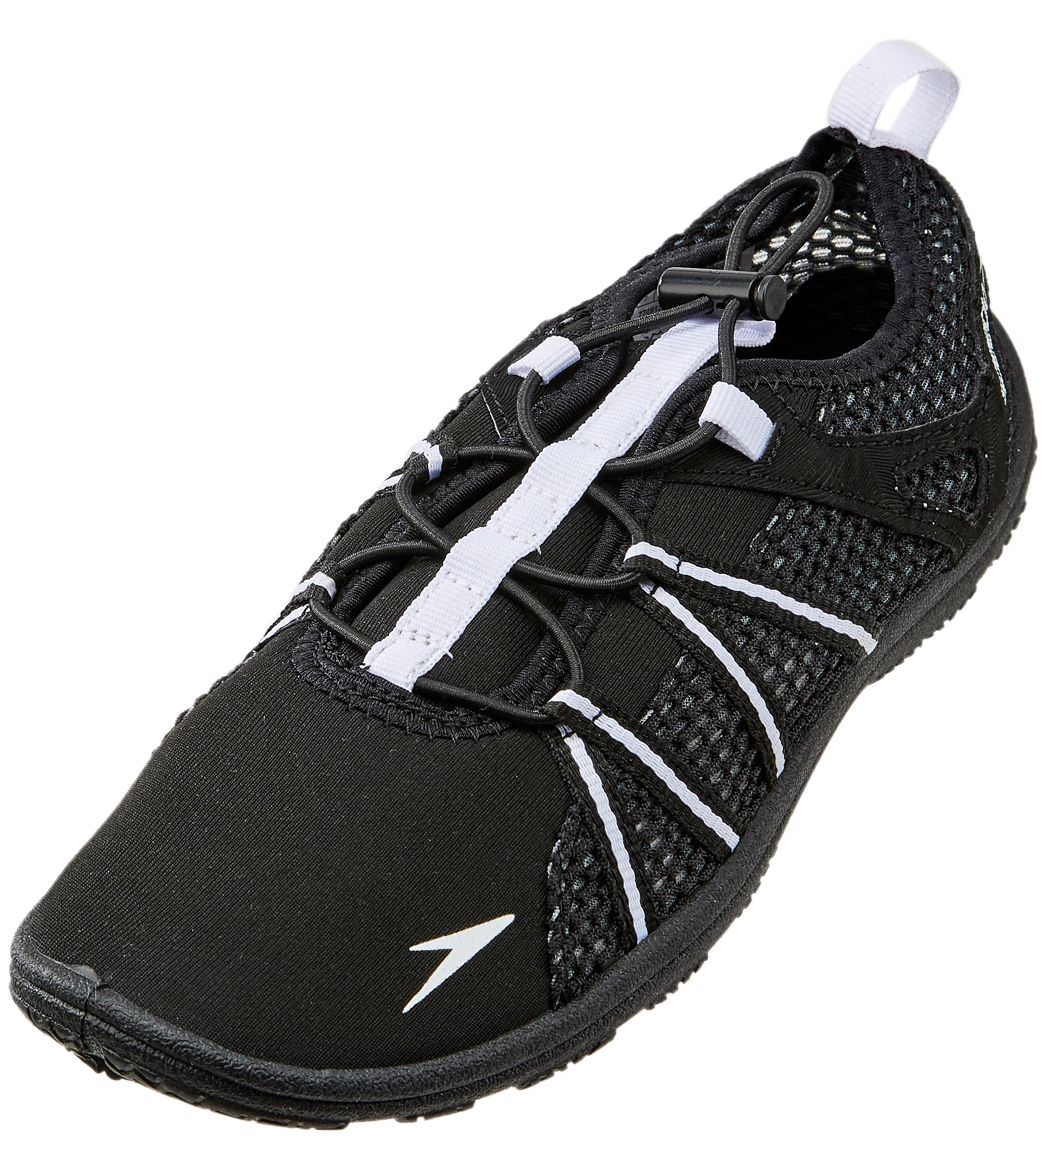 Speedo Women's Seaside Lace Water Shoe - Black/White 5 - Swimoutlet.com